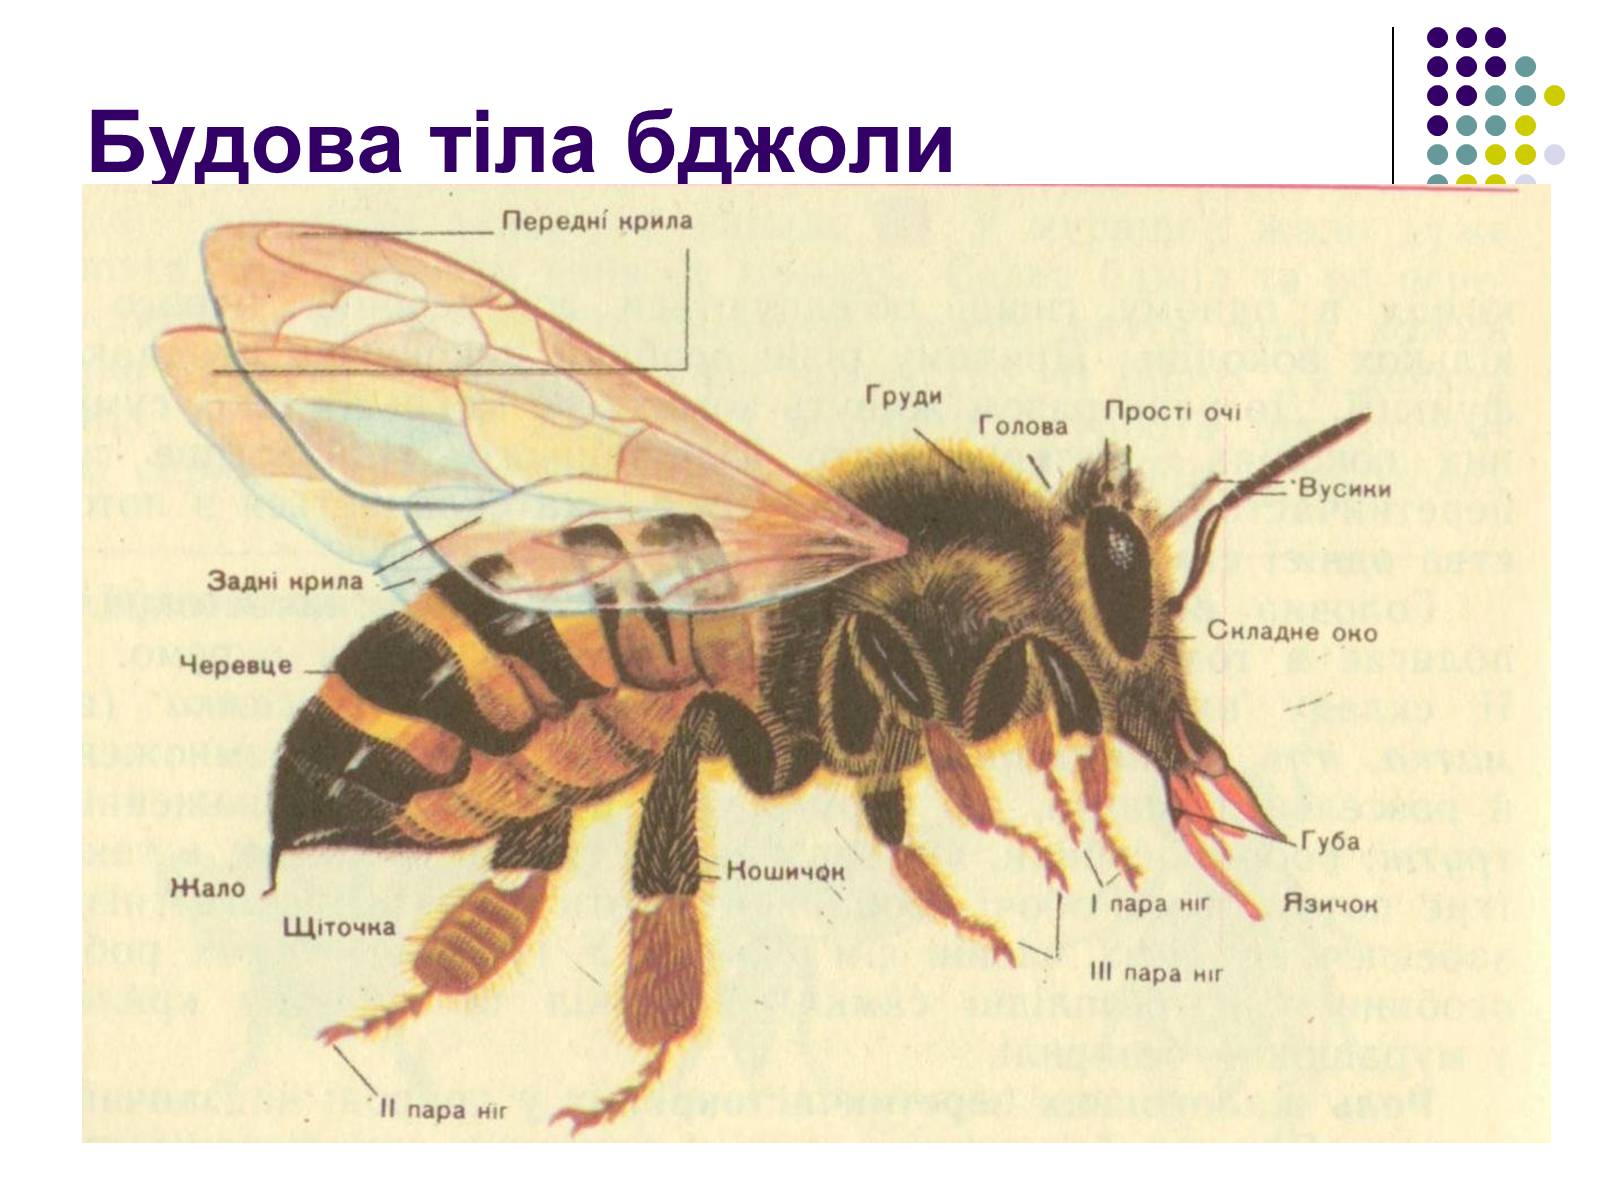 Пчела целом. Строение пчелы медоносной. Анатомия пчелы медоносной. Пчела медоносная Крылья. Отделы тела пчелы медоносной.